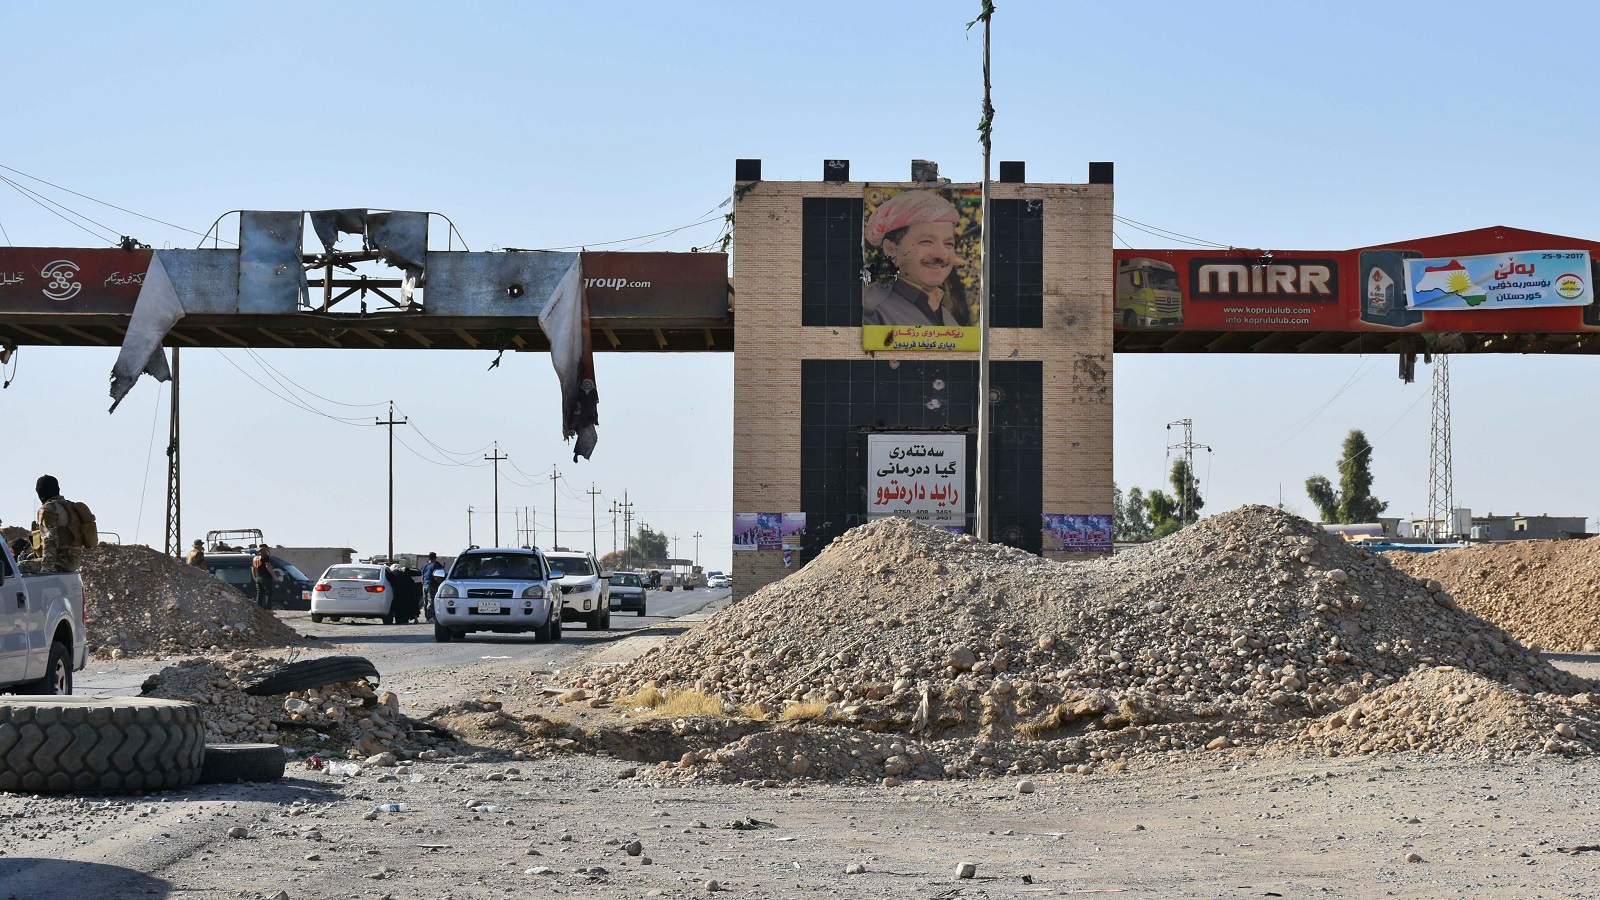 العراق:مذكرة استقدام بحق بارزاني.. وتعزيزات إلى حقول كركوك